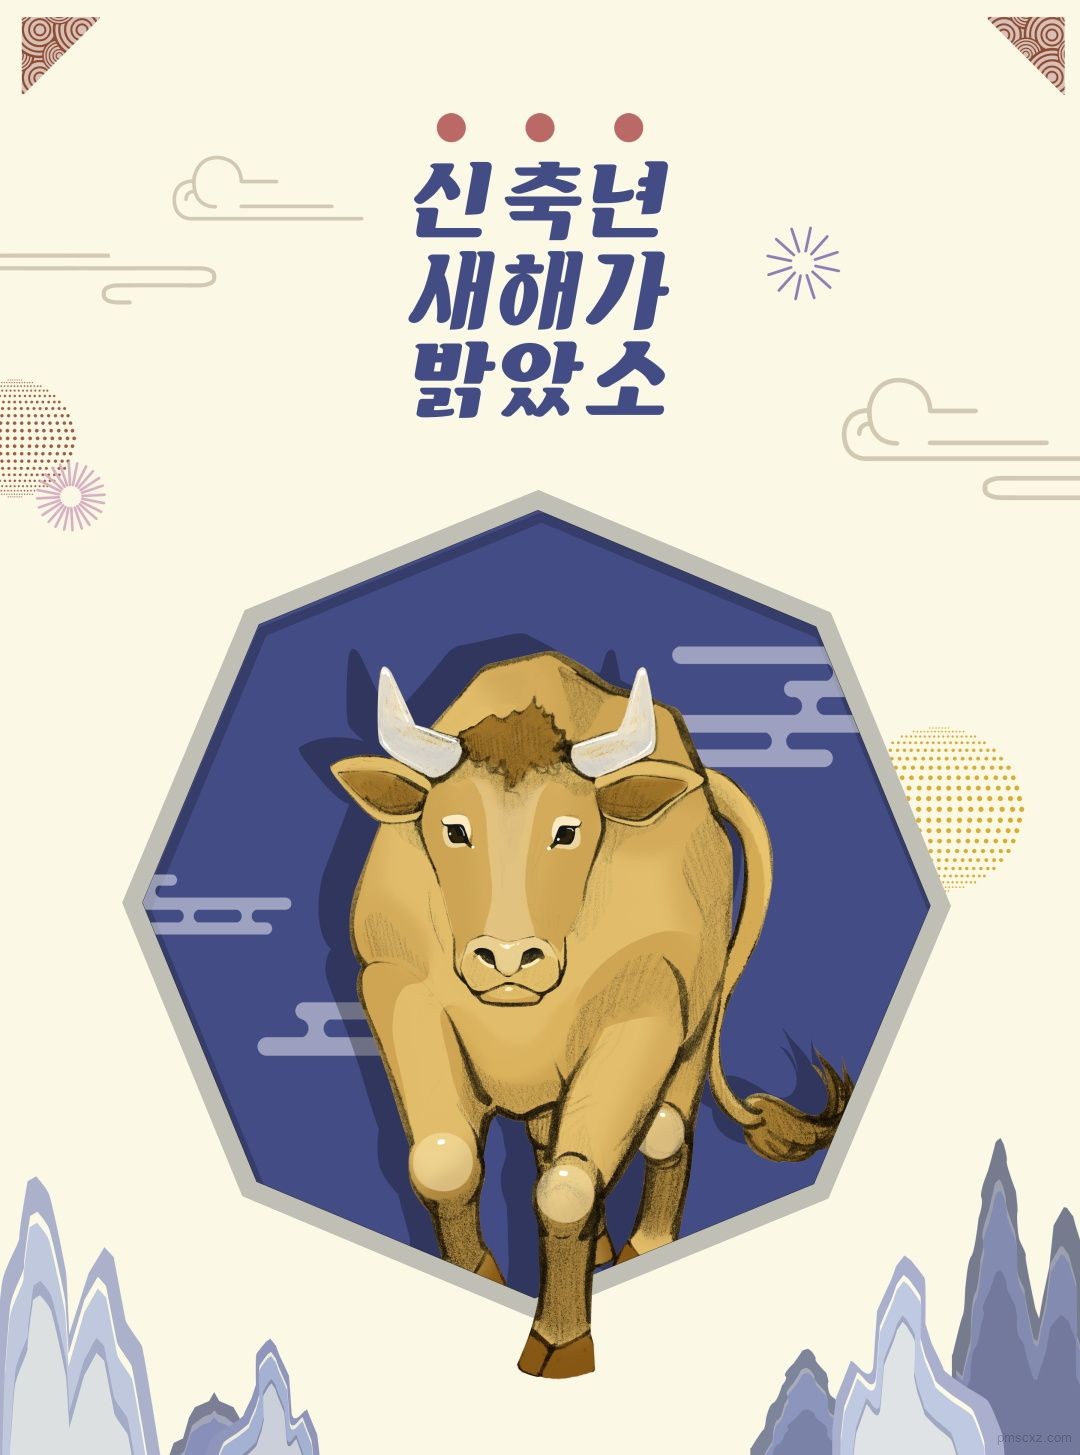 5款牛年新年新春春节插画psd素材 平面素材下载